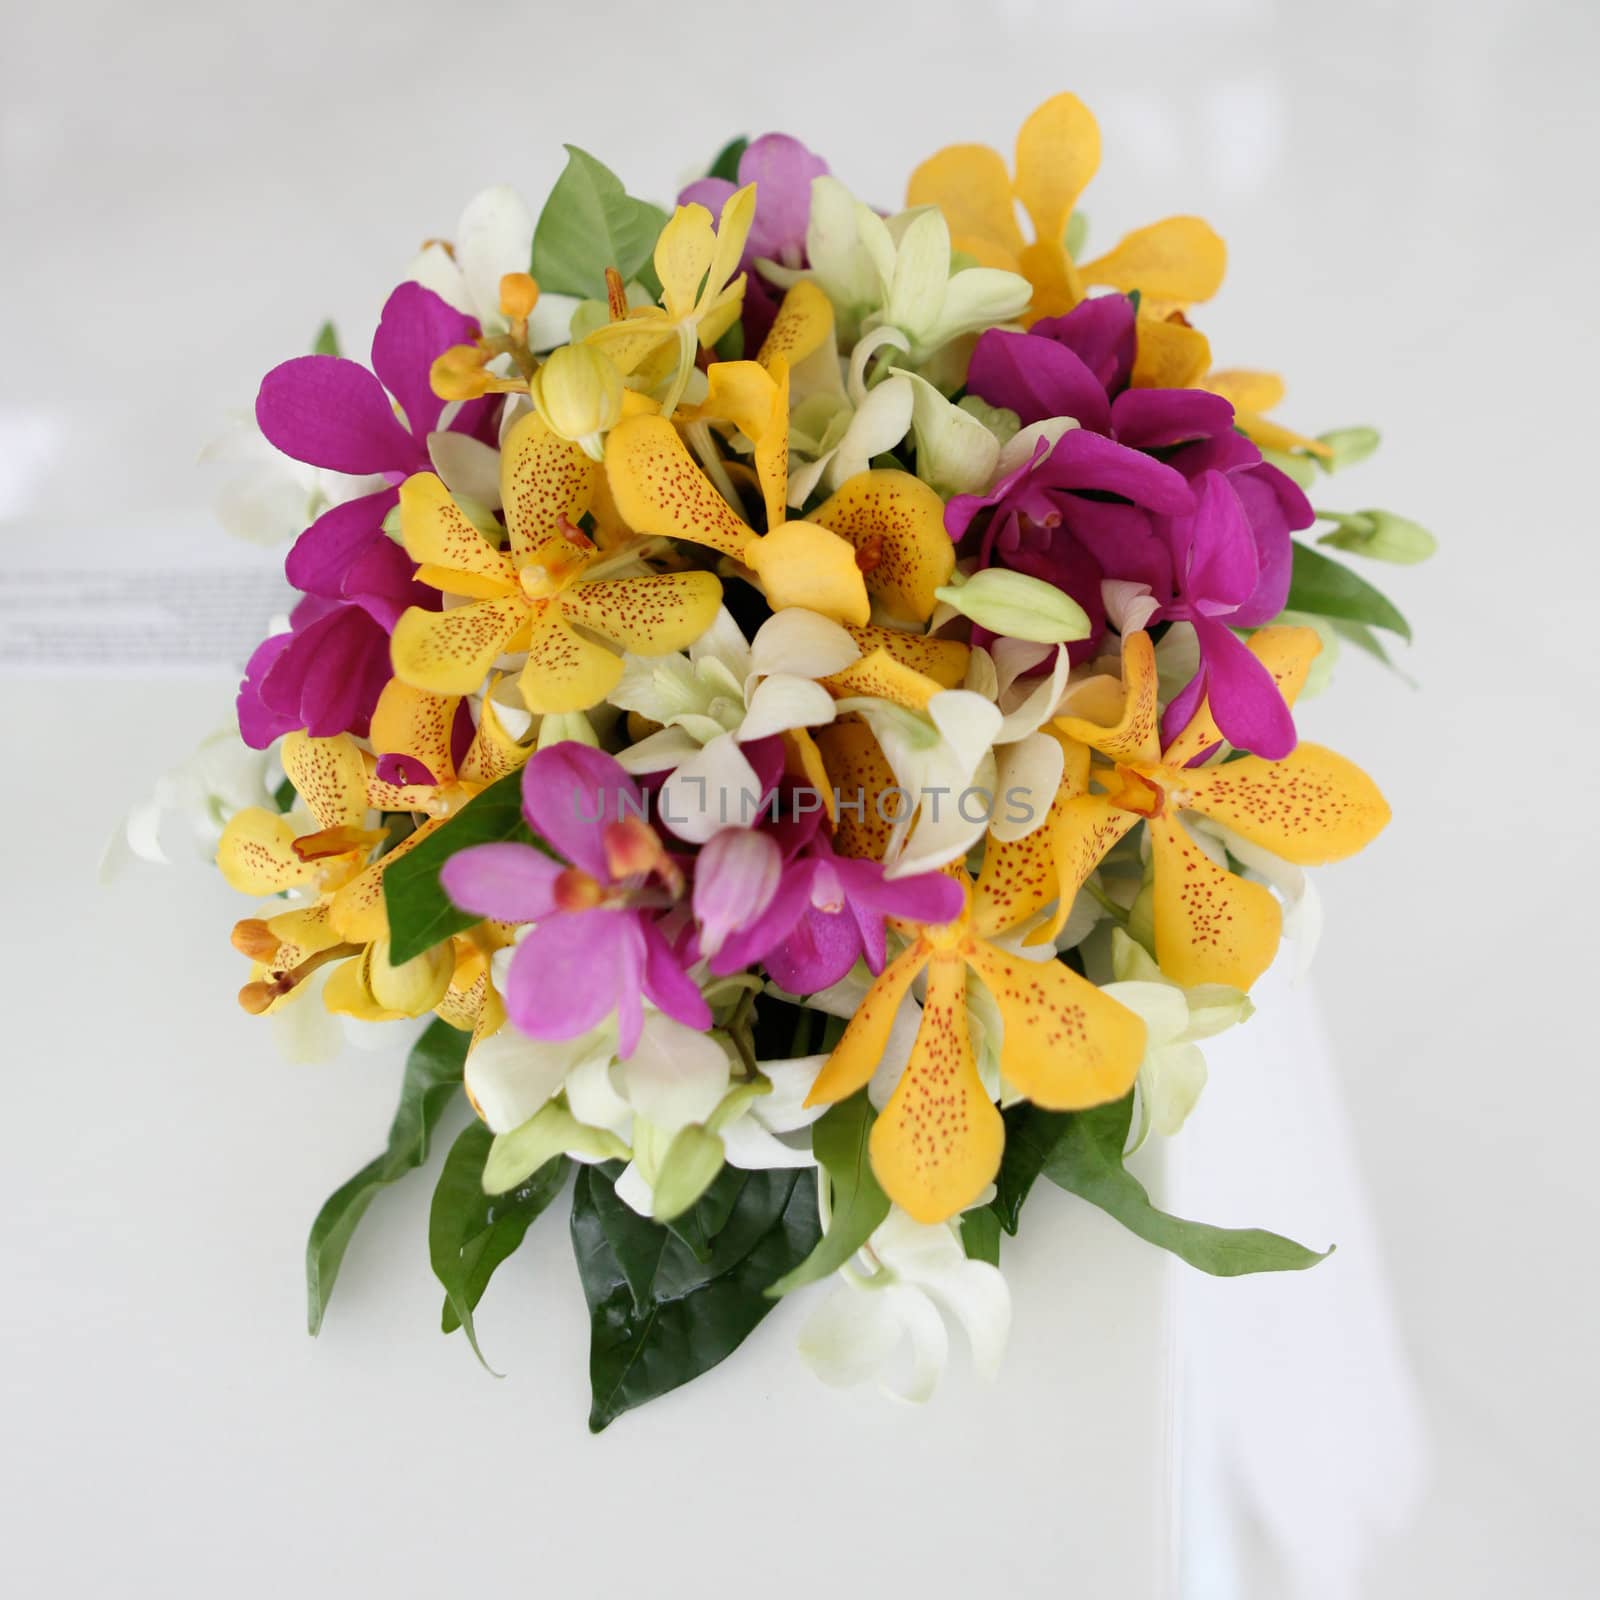 Wedding bouquet. by ginaellen